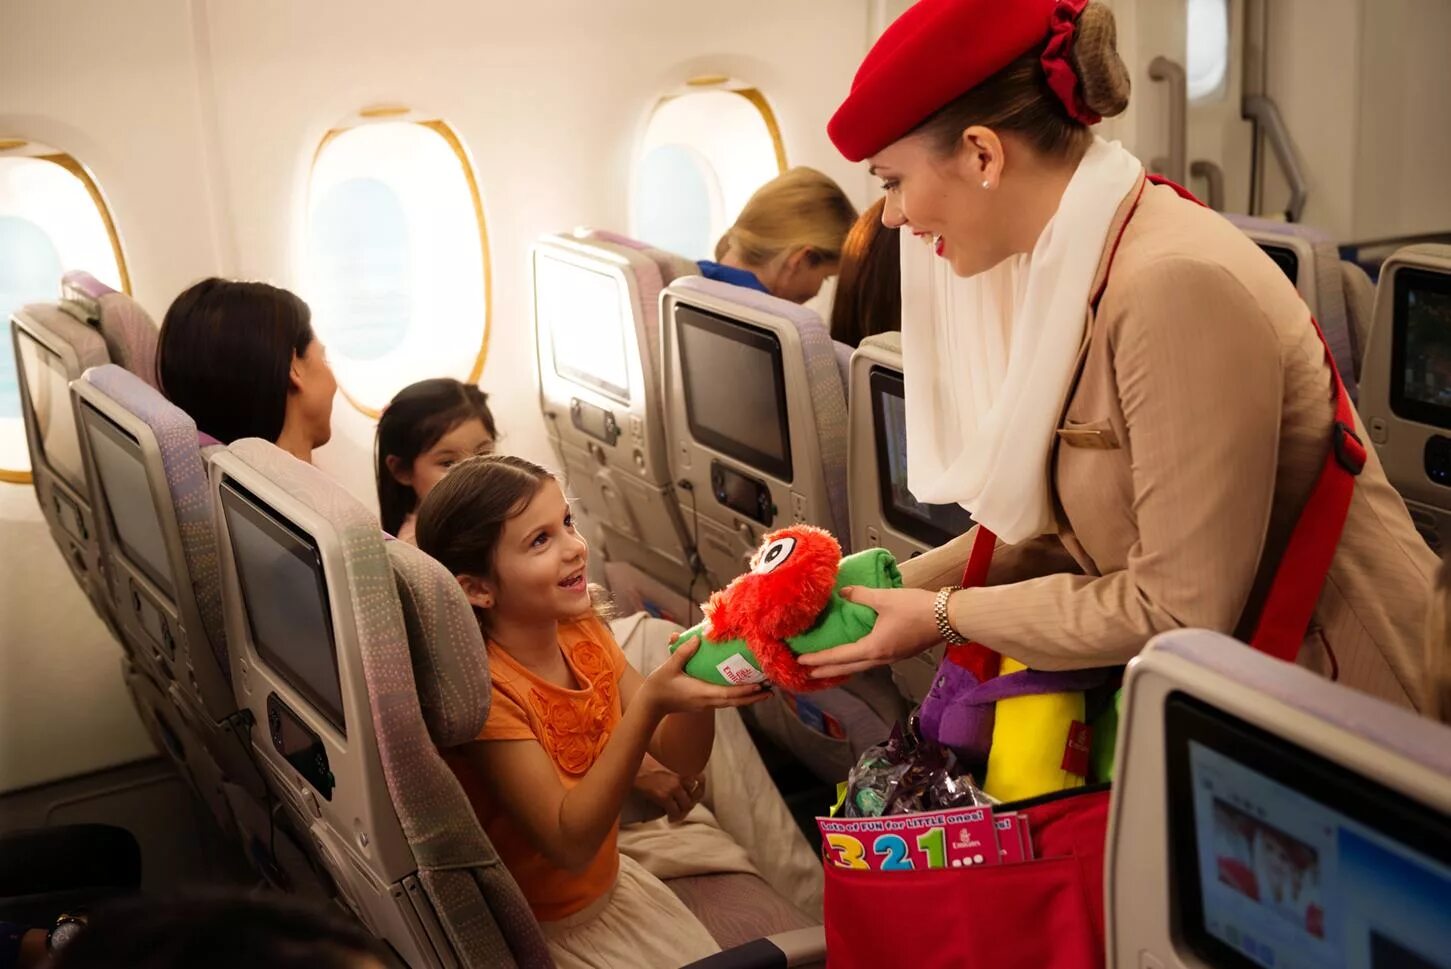 I get on the plane. Авиакомпания эмираты Emirates. Подарки детям в самолет. Подарки в самолете дяд детей. Игрушки в самолет для ребенка 2 года.